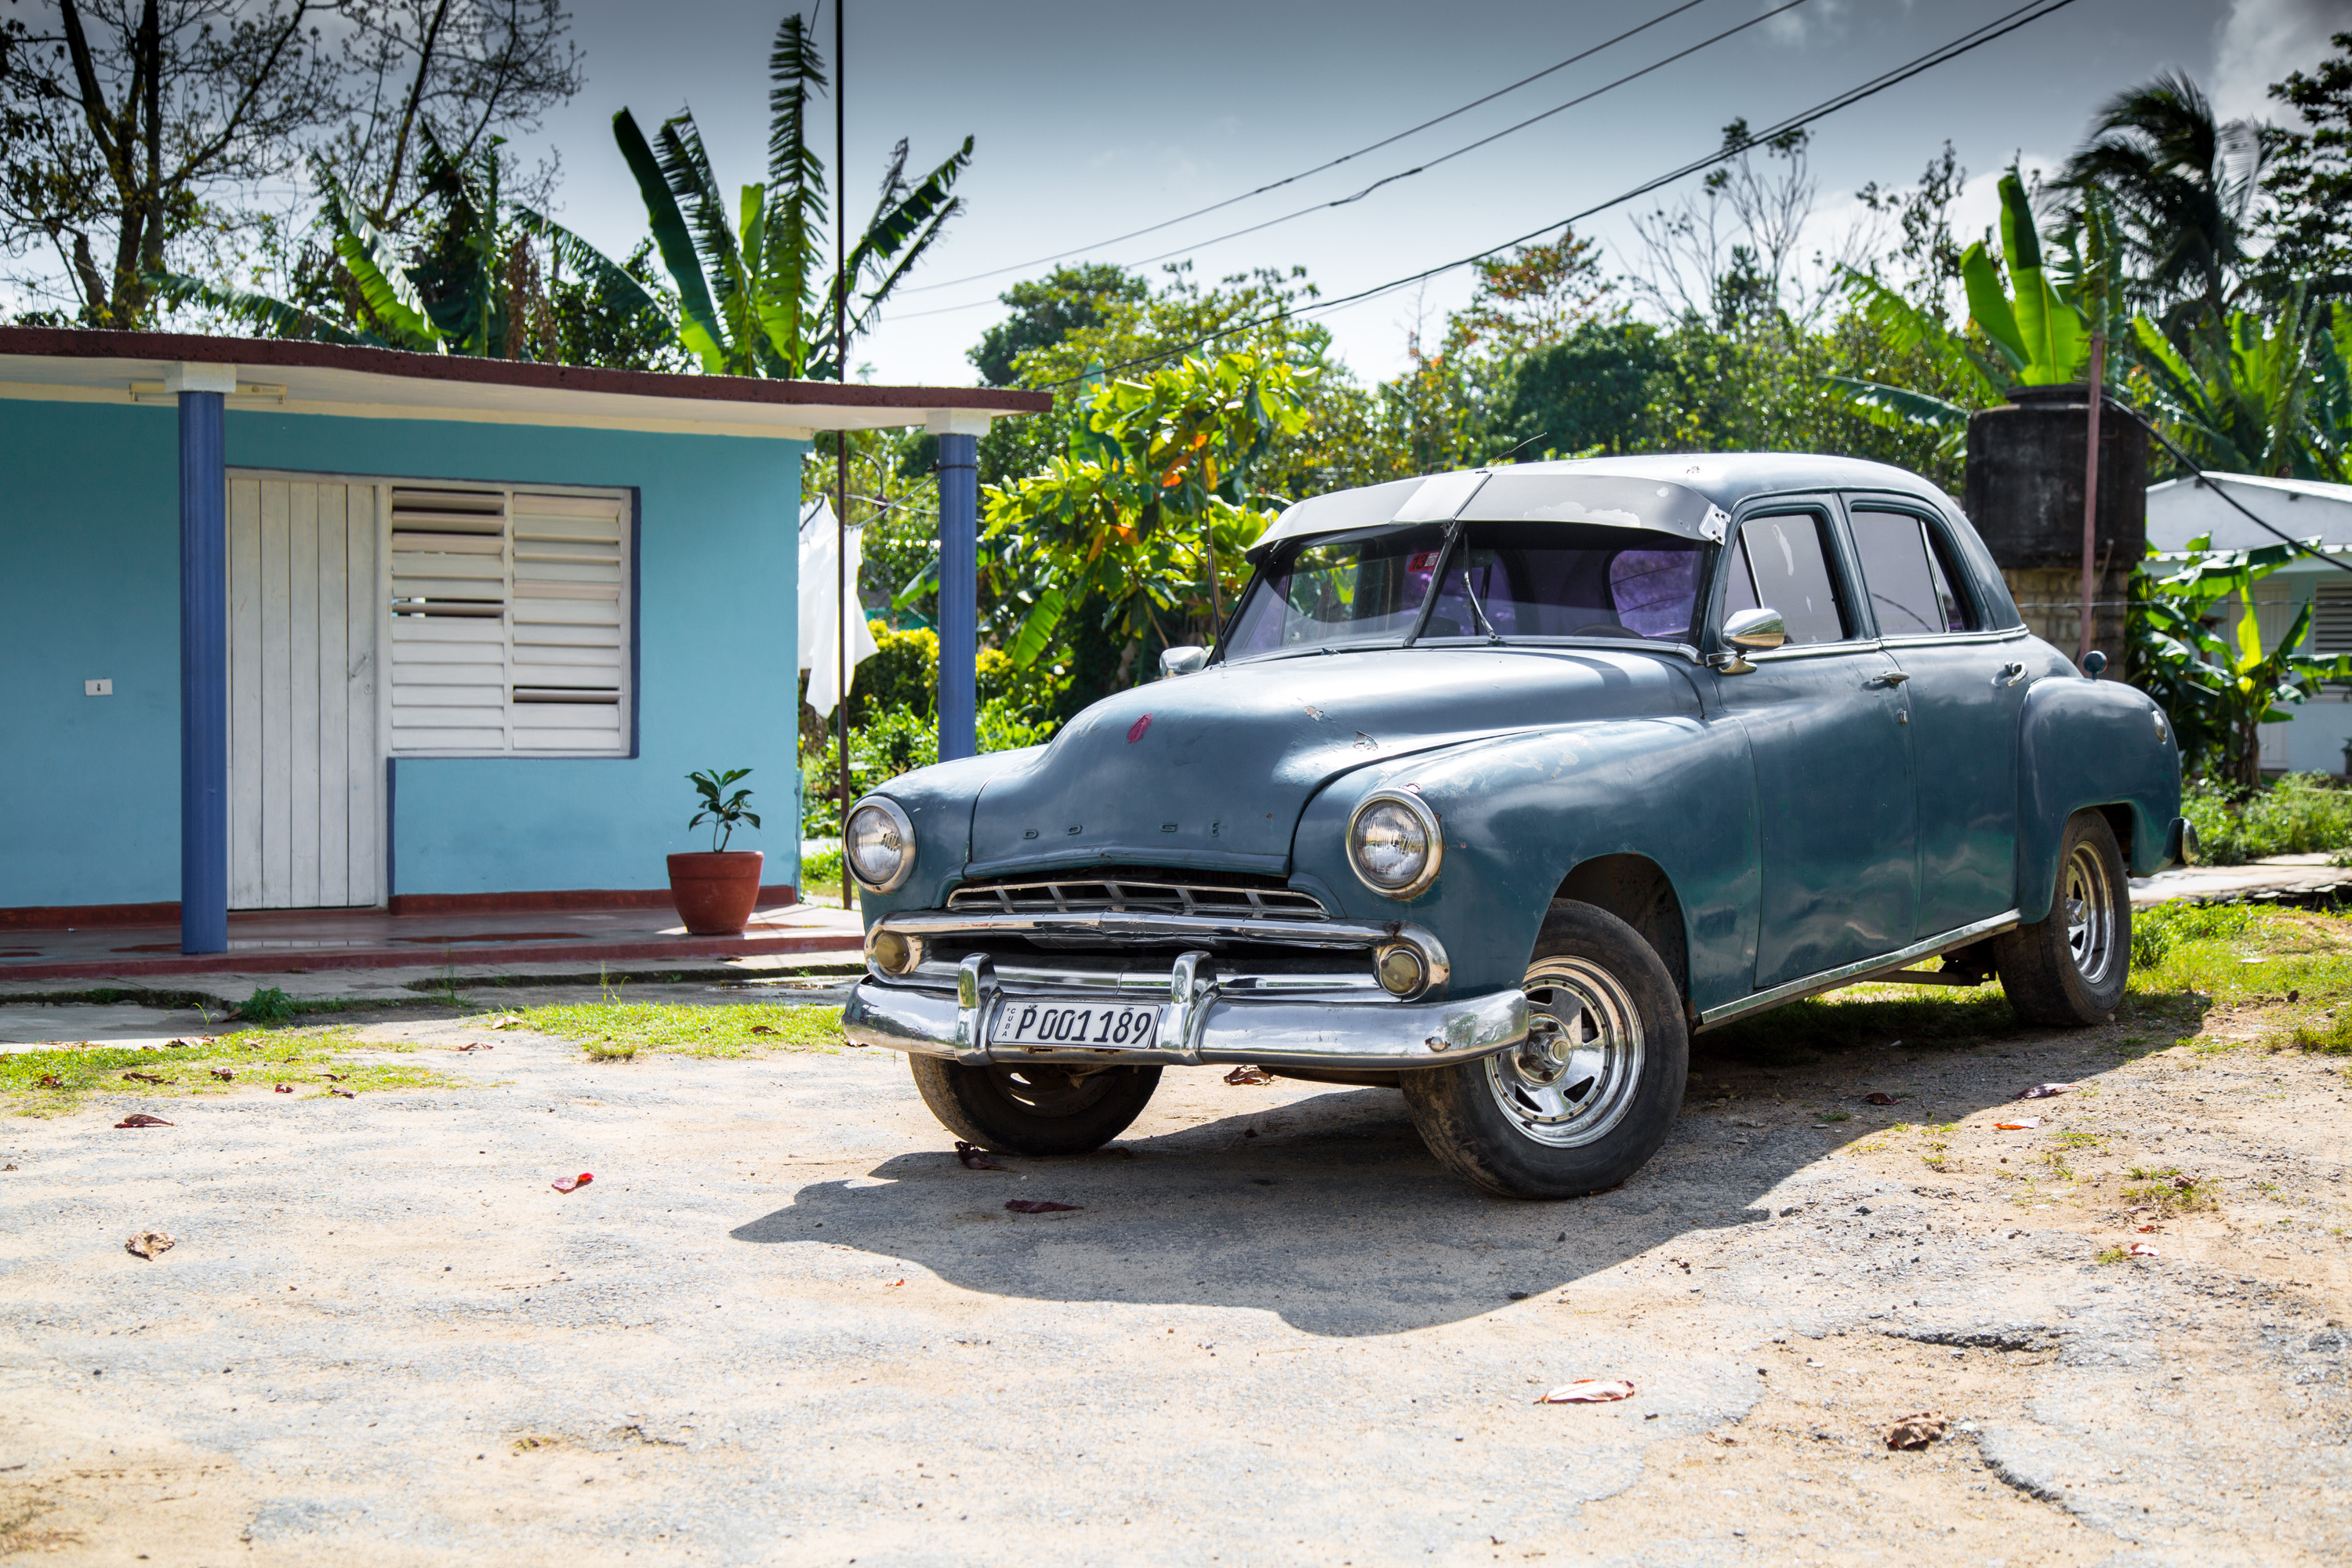 Magic Cuba - Island on the rise